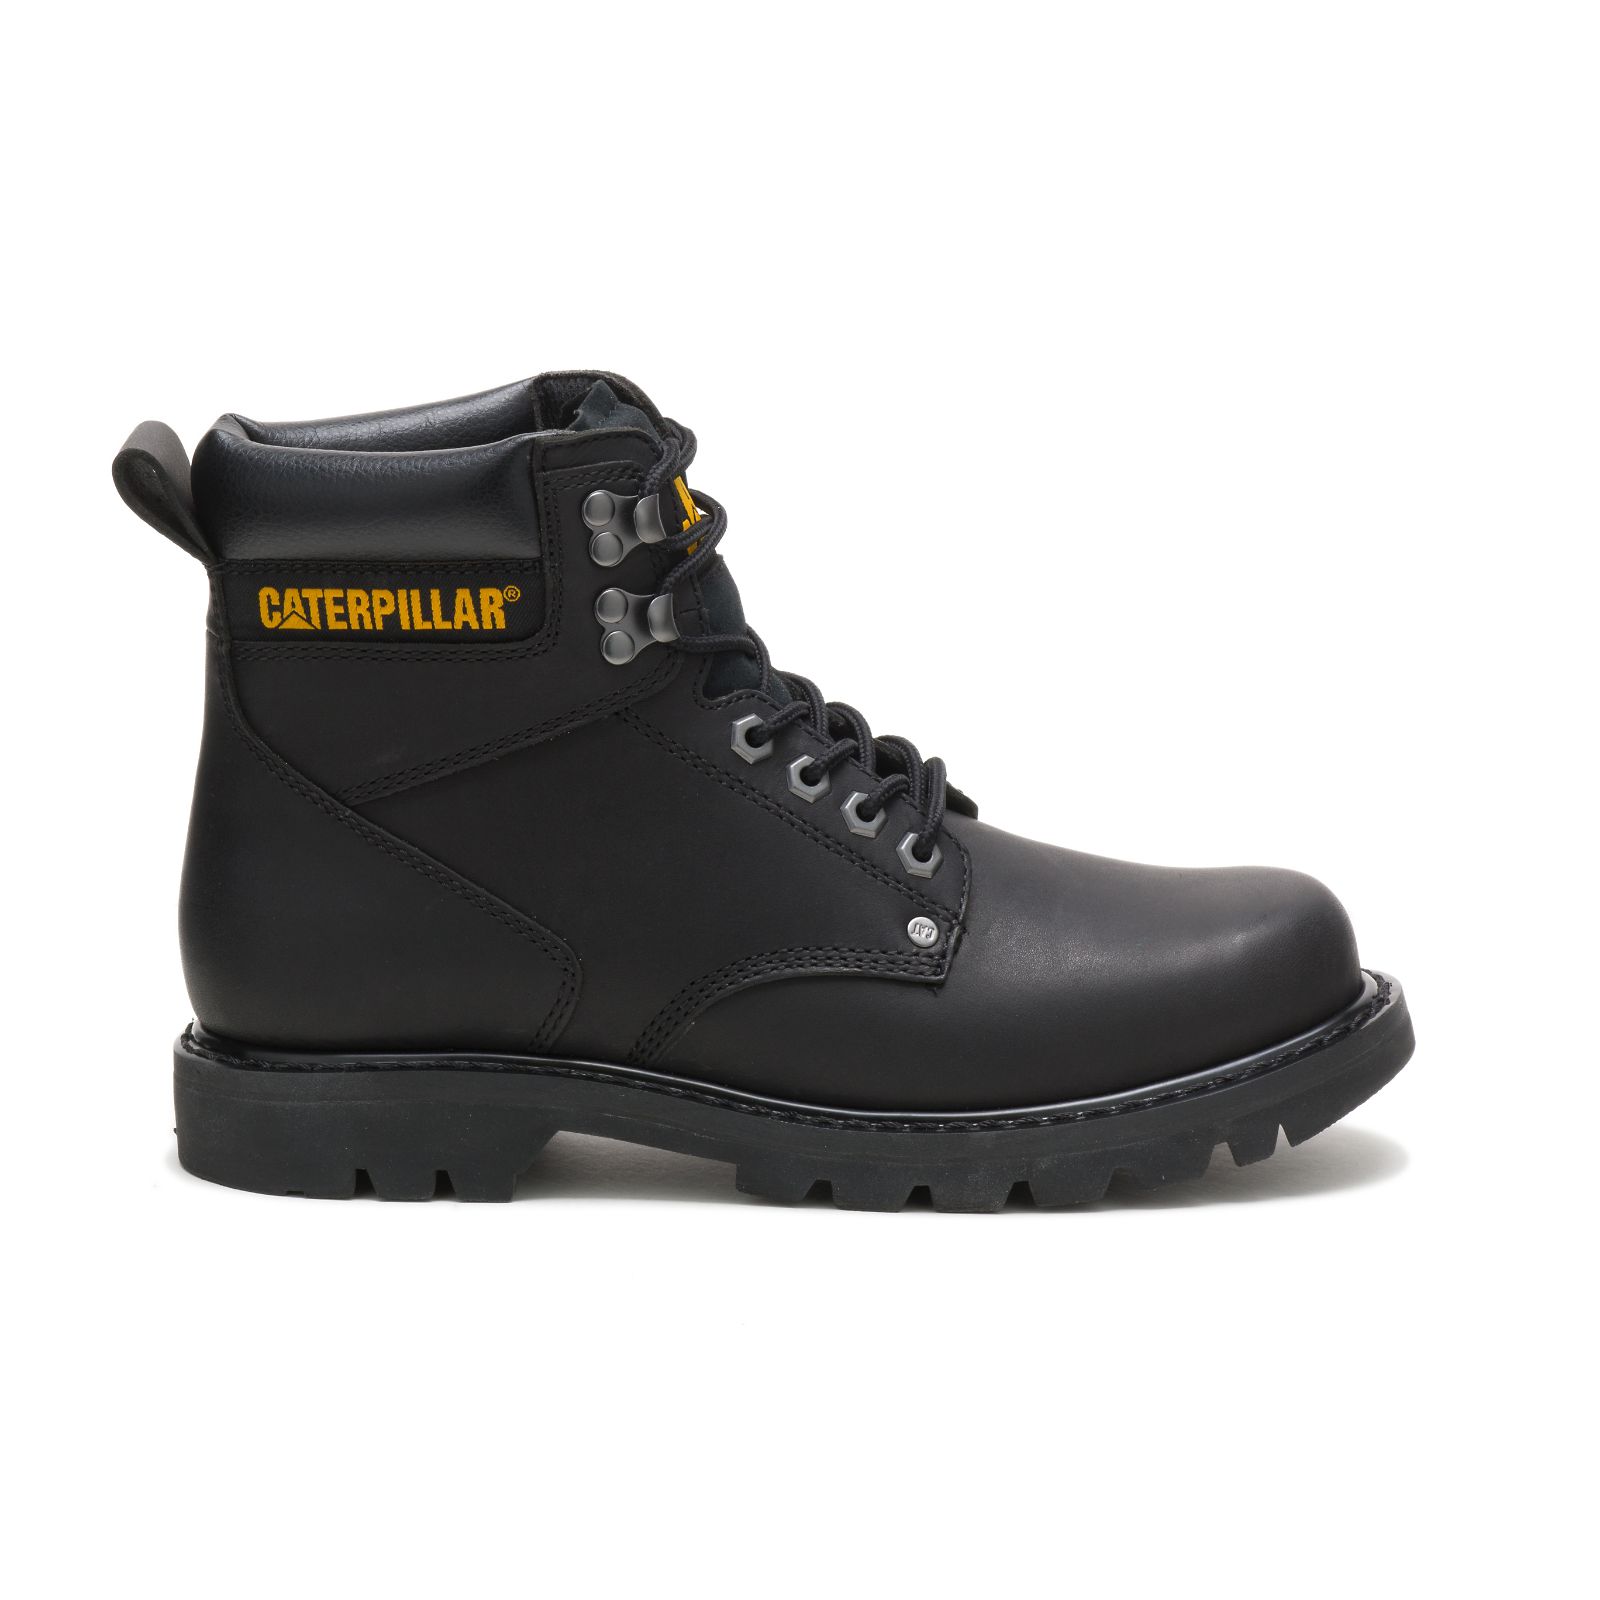 Caterpillar Work Boots Dubai - Caterpillar Second Shift Mens - Black FHVURY524